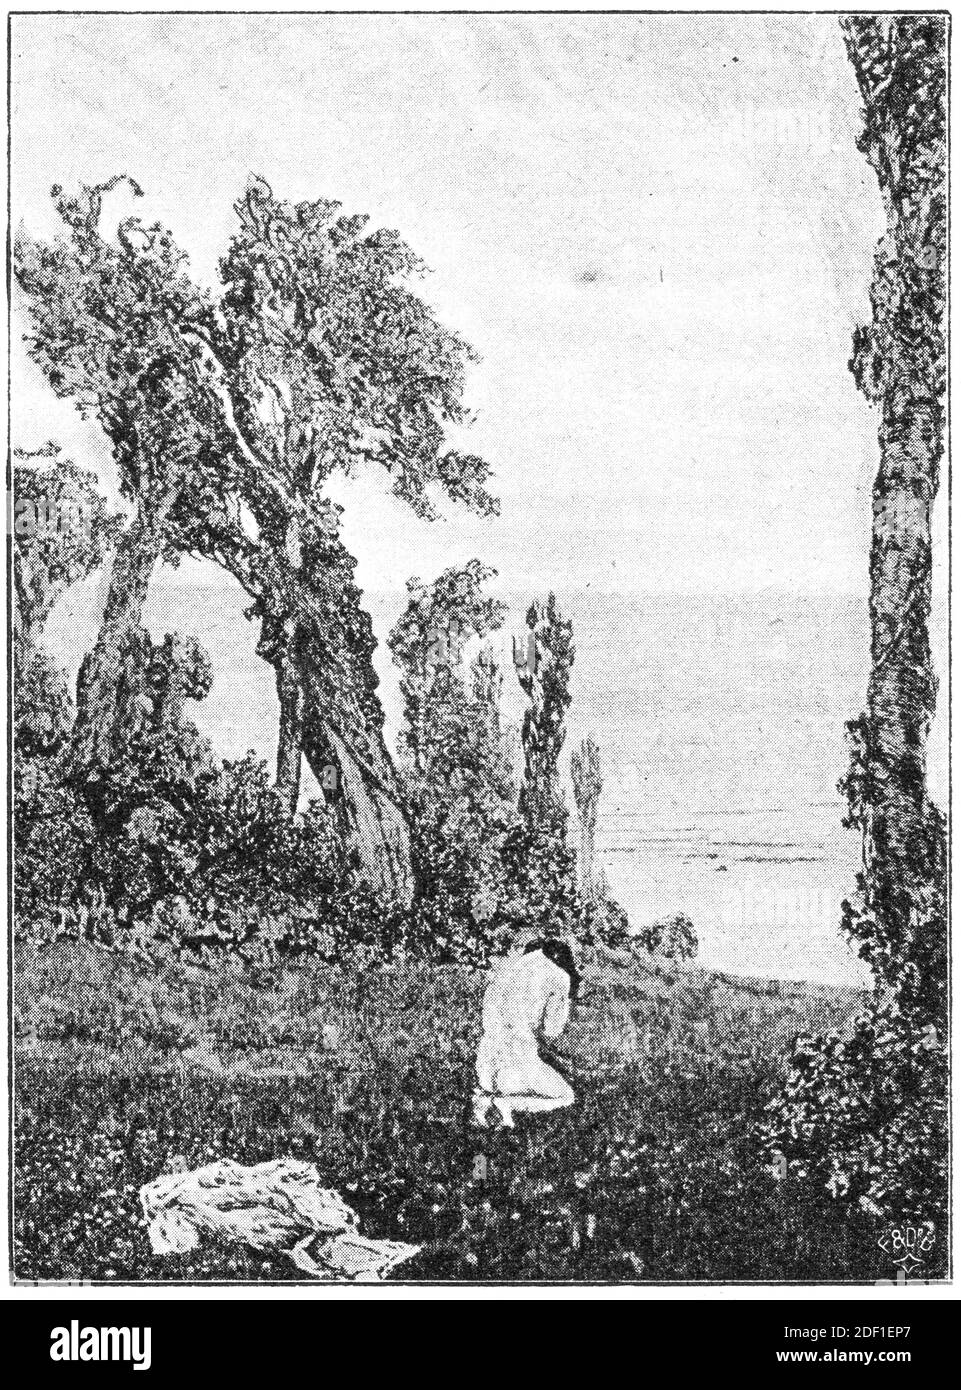 'De la beauté' par un peintre allemand Max Klinger. Illustration du 19e siècle. Arrière-plan blanc. Banque D'Images